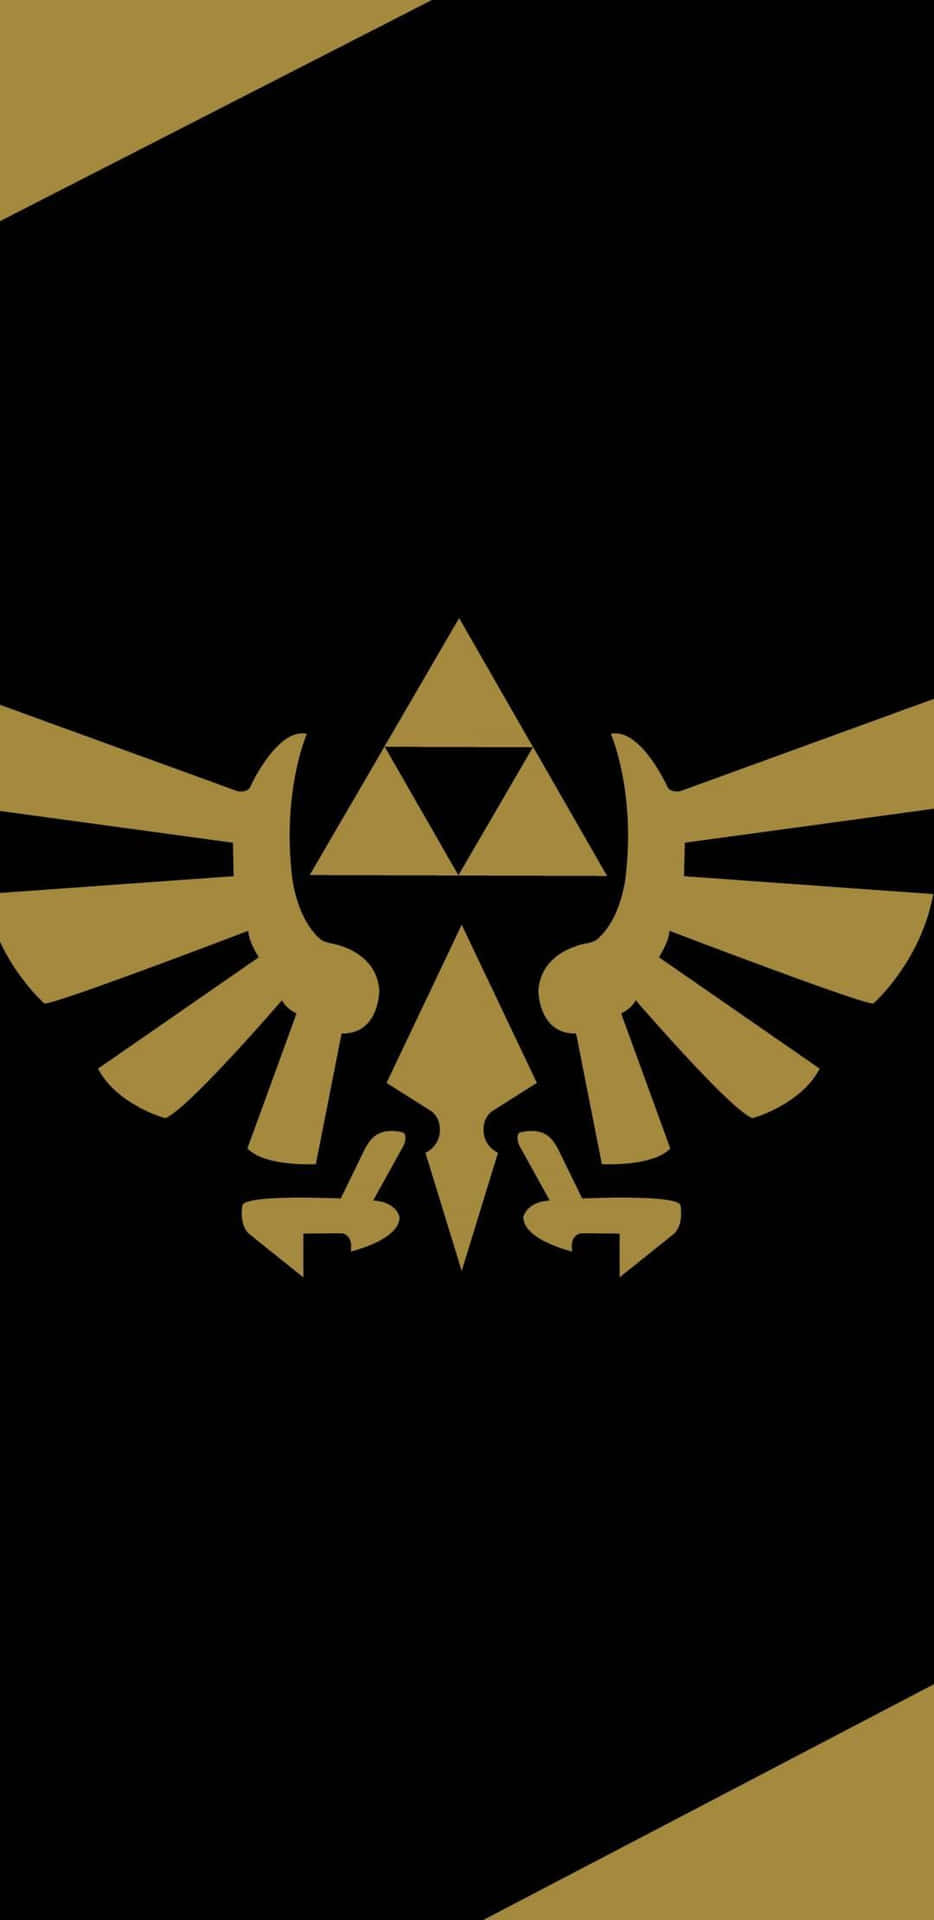 The Legend Of Zelda Logo On A Black Background Wallpaper